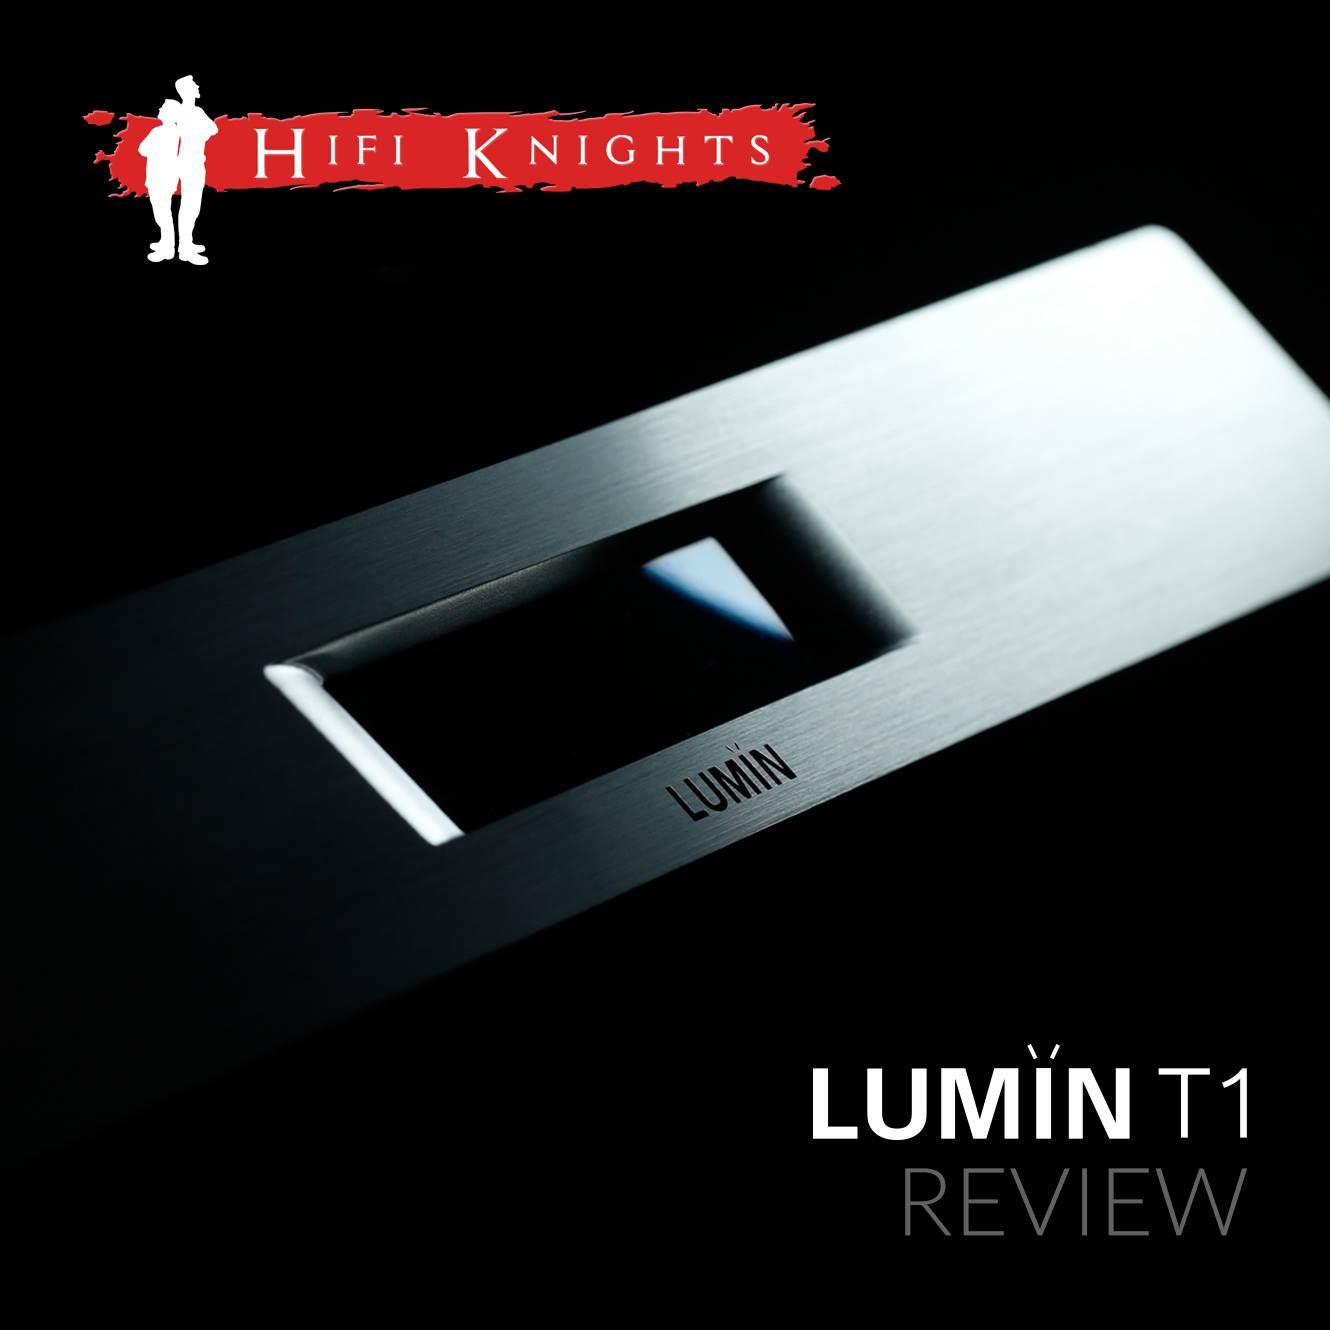 Hi-Fi Knights LUMIN T1 review